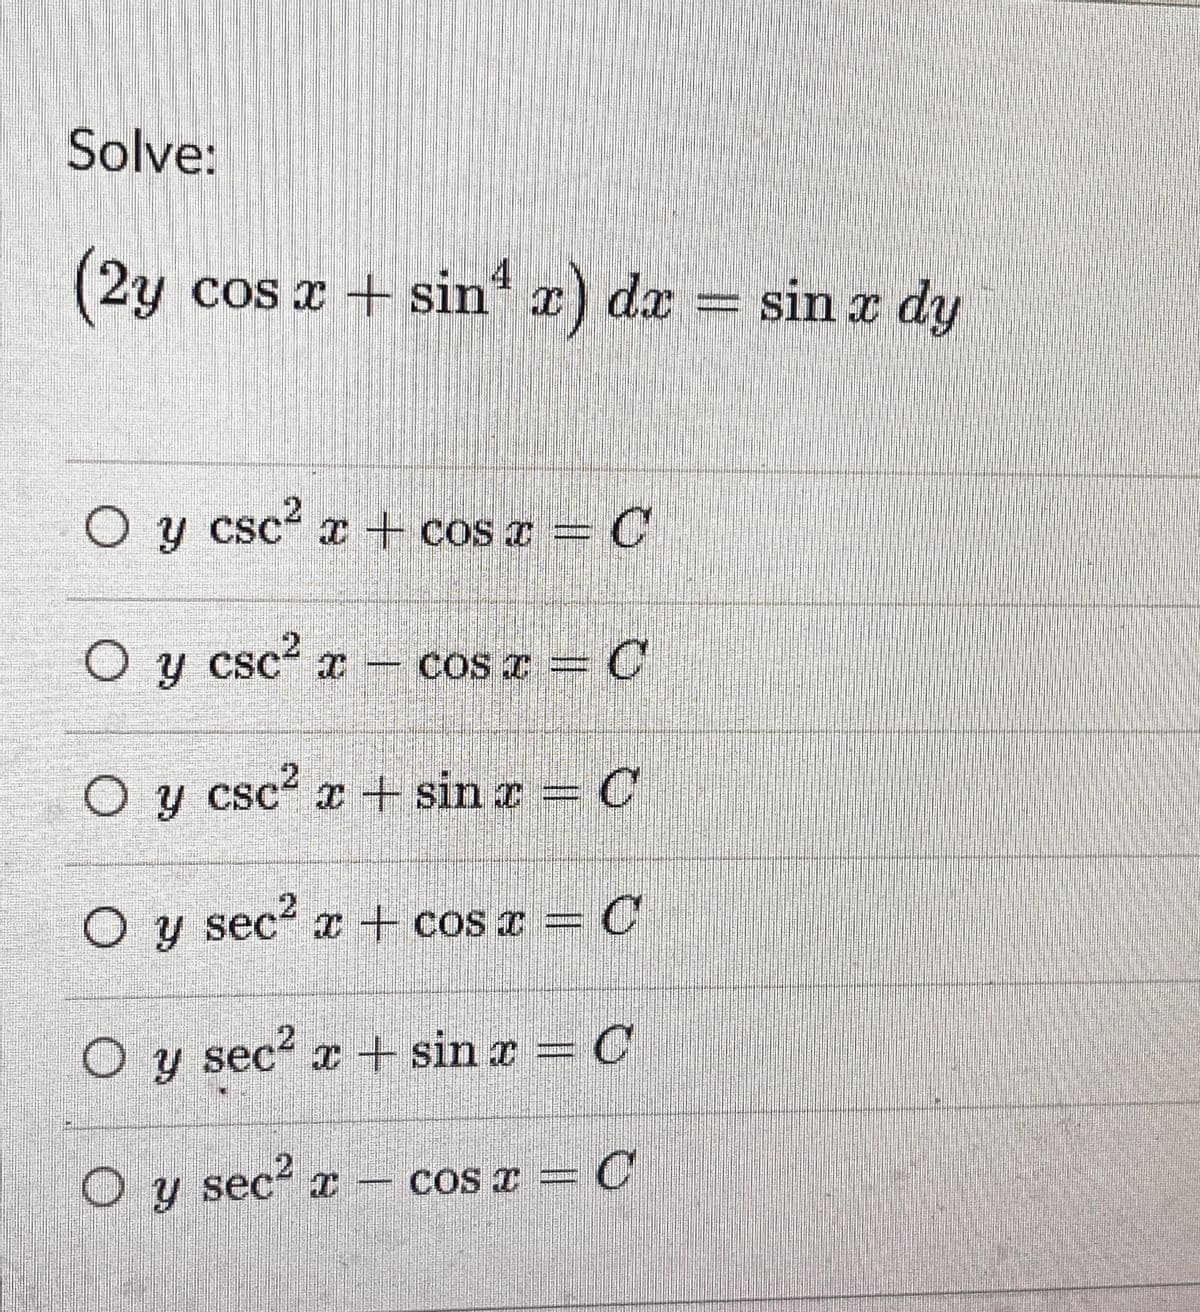 Solve:
(2y cos x + sin* x) dx = sin x dy
4
O y
y csc x+ cos =
O y csc? x -
CoS T = C
.2
O y csc? a + sin r C
O y sec x + cos x = C
O y sec? x + sin x = C
O y sec r – cos r = C
